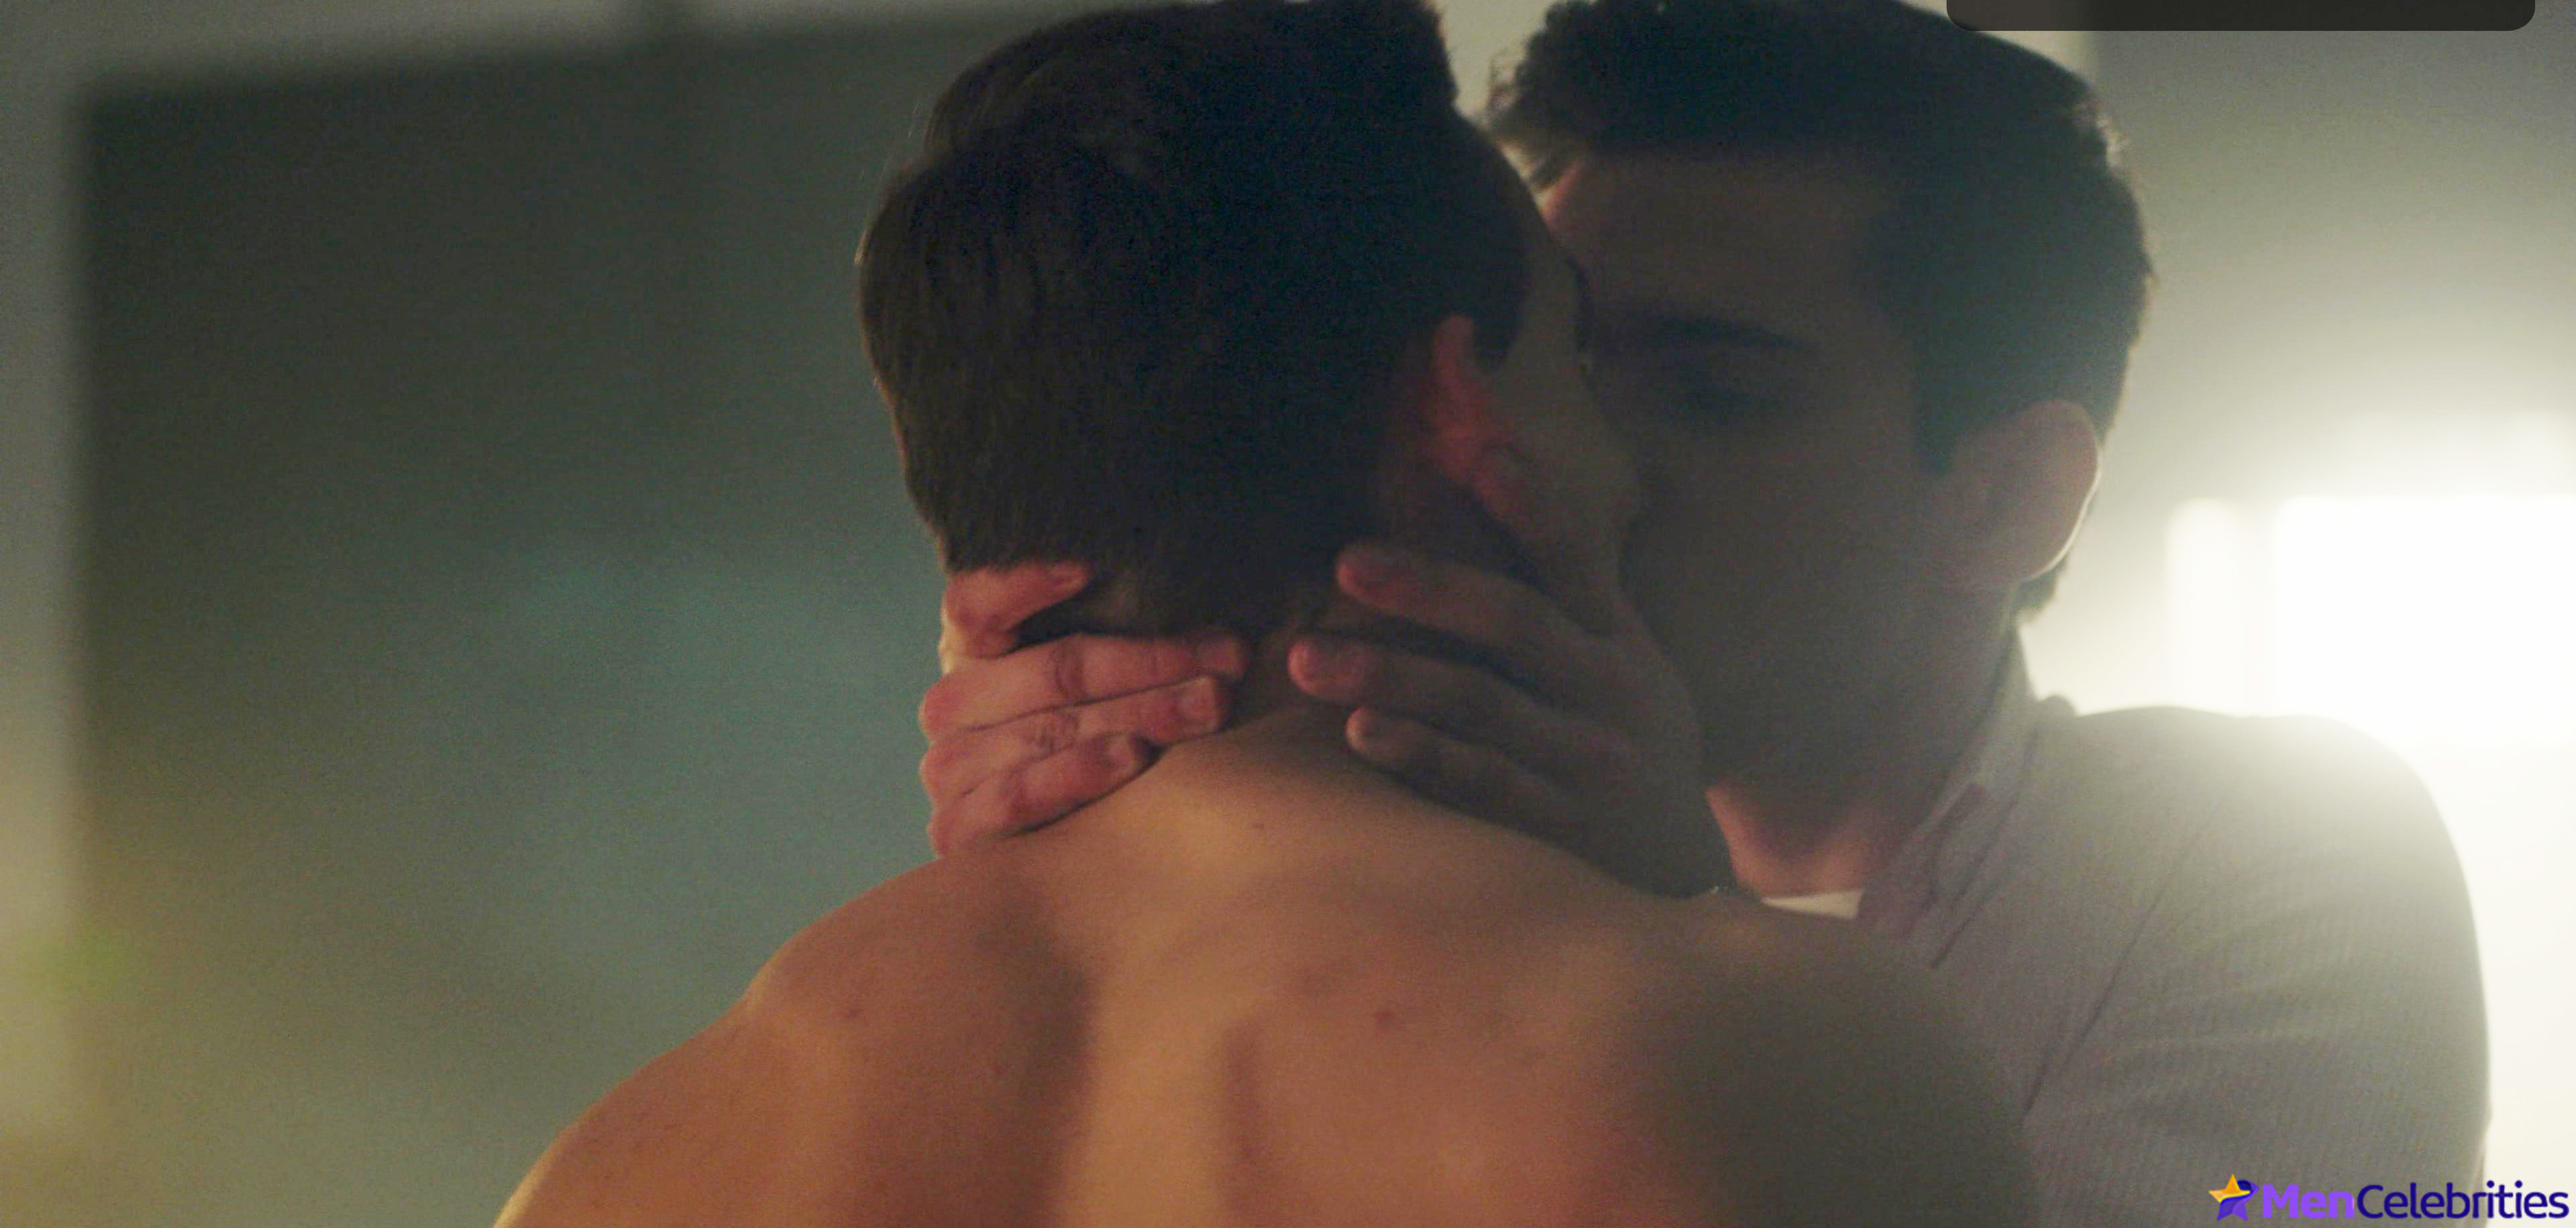 Miguel Herran nude & gay erotic scenes.